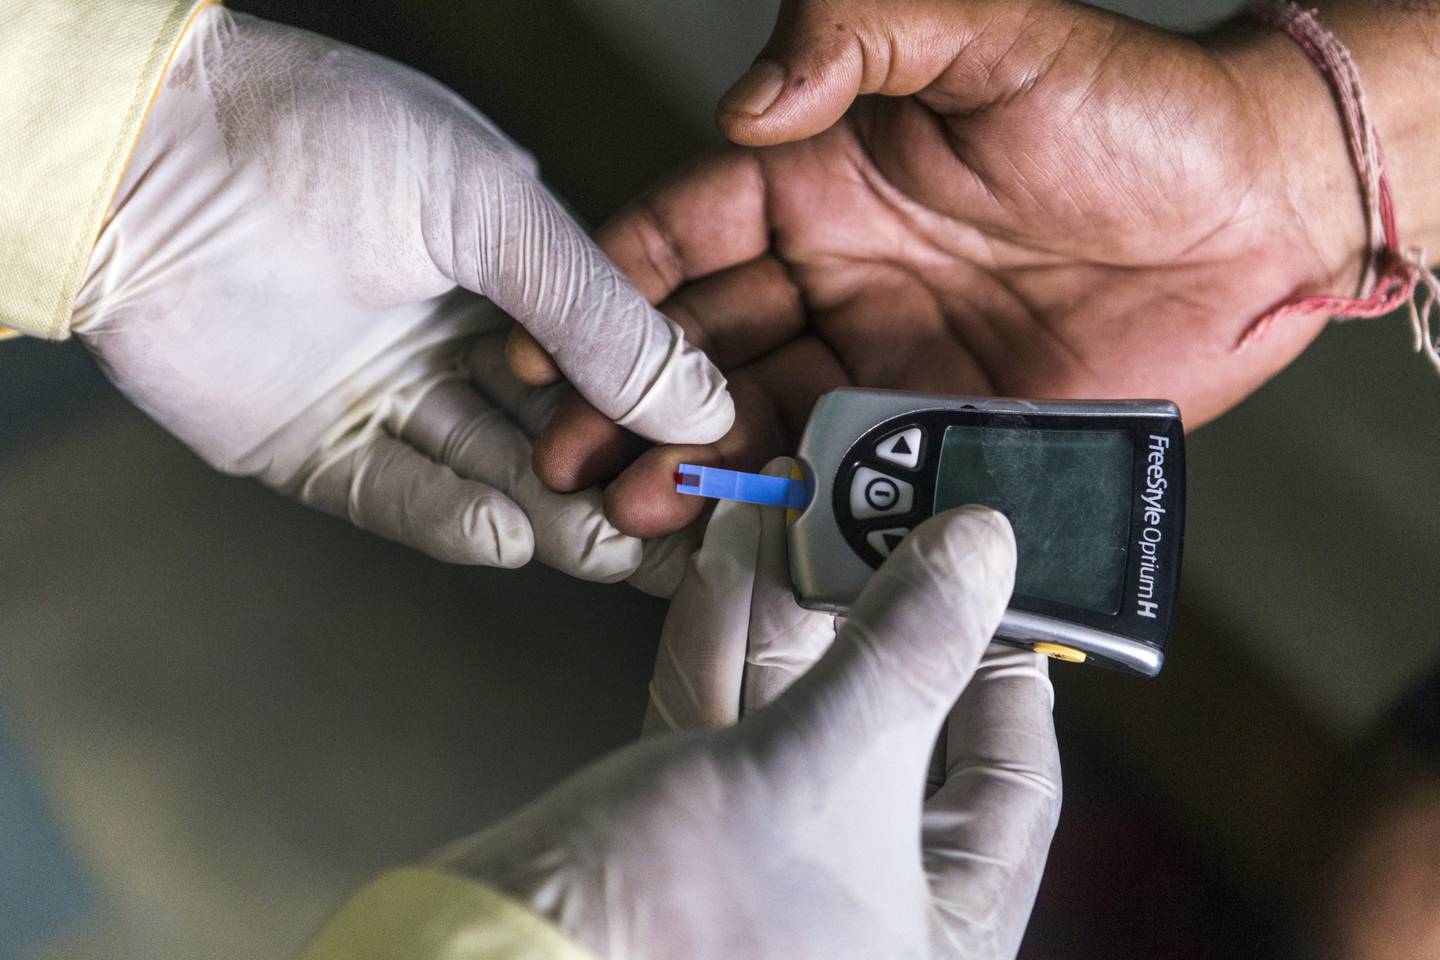 Trabajadores de la salud realizan pruebas para medir el nivel de riesgo de diabetes e hipertensión.Fotógrafo: Dhiraj Singh/Bloombergdfd